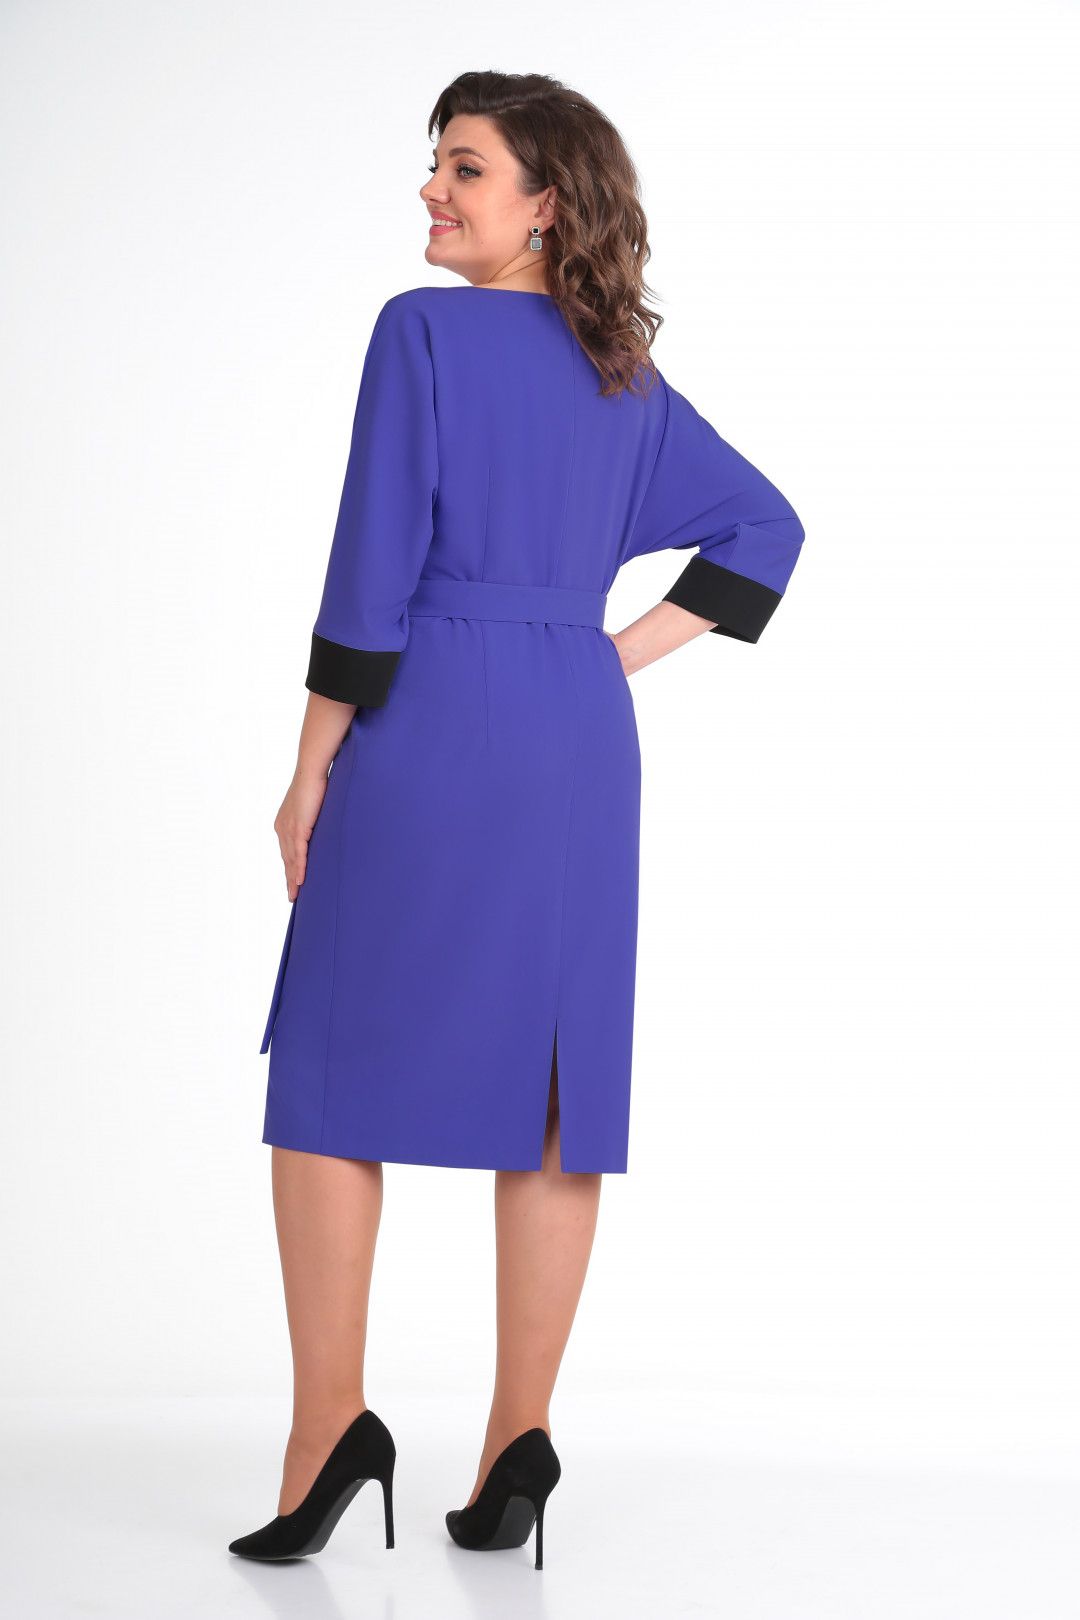 Платье Карина Делюкс В-185-1 ультрафиолет